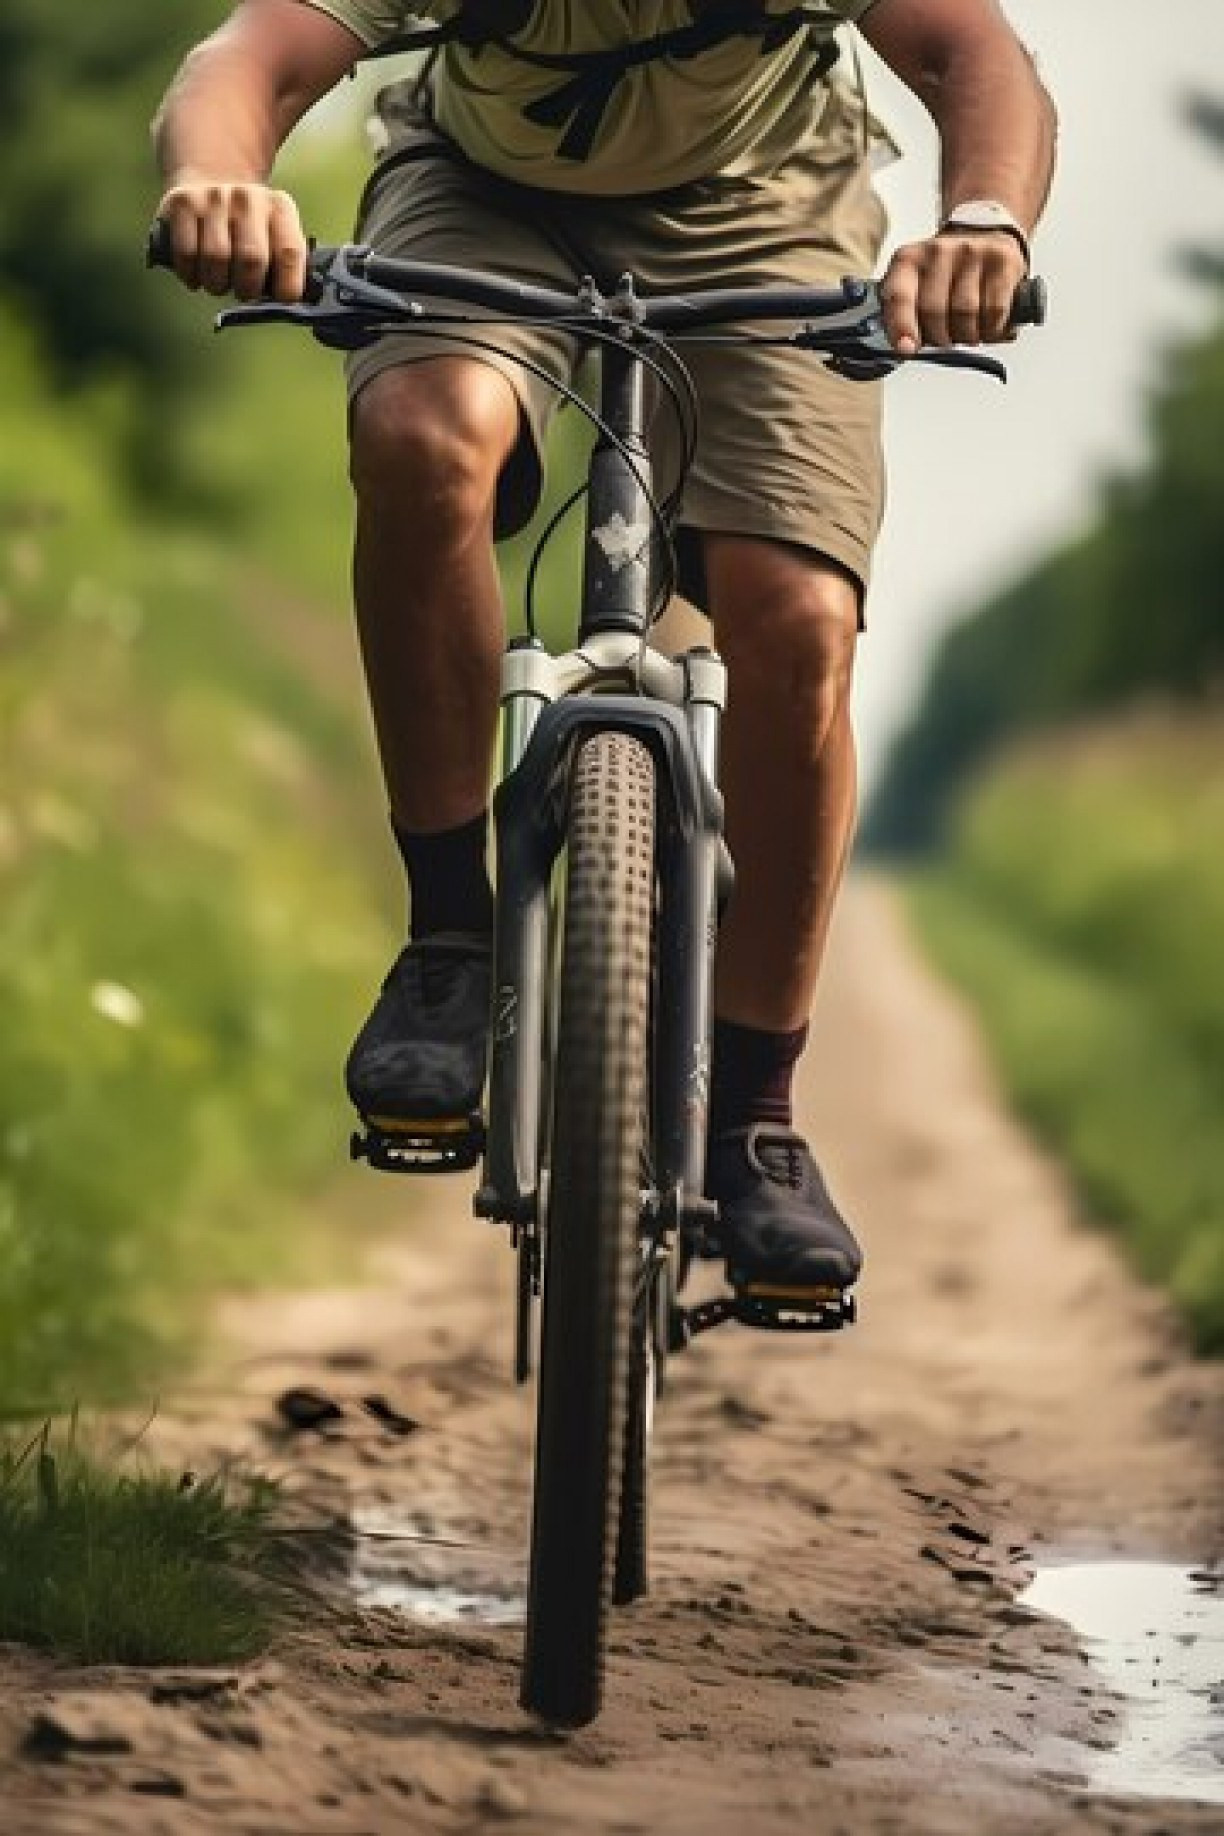 Diminui o colesterol ruim e aumenta a expectativa de vida: 9 benefícios de andar de bicicleta para a saúde